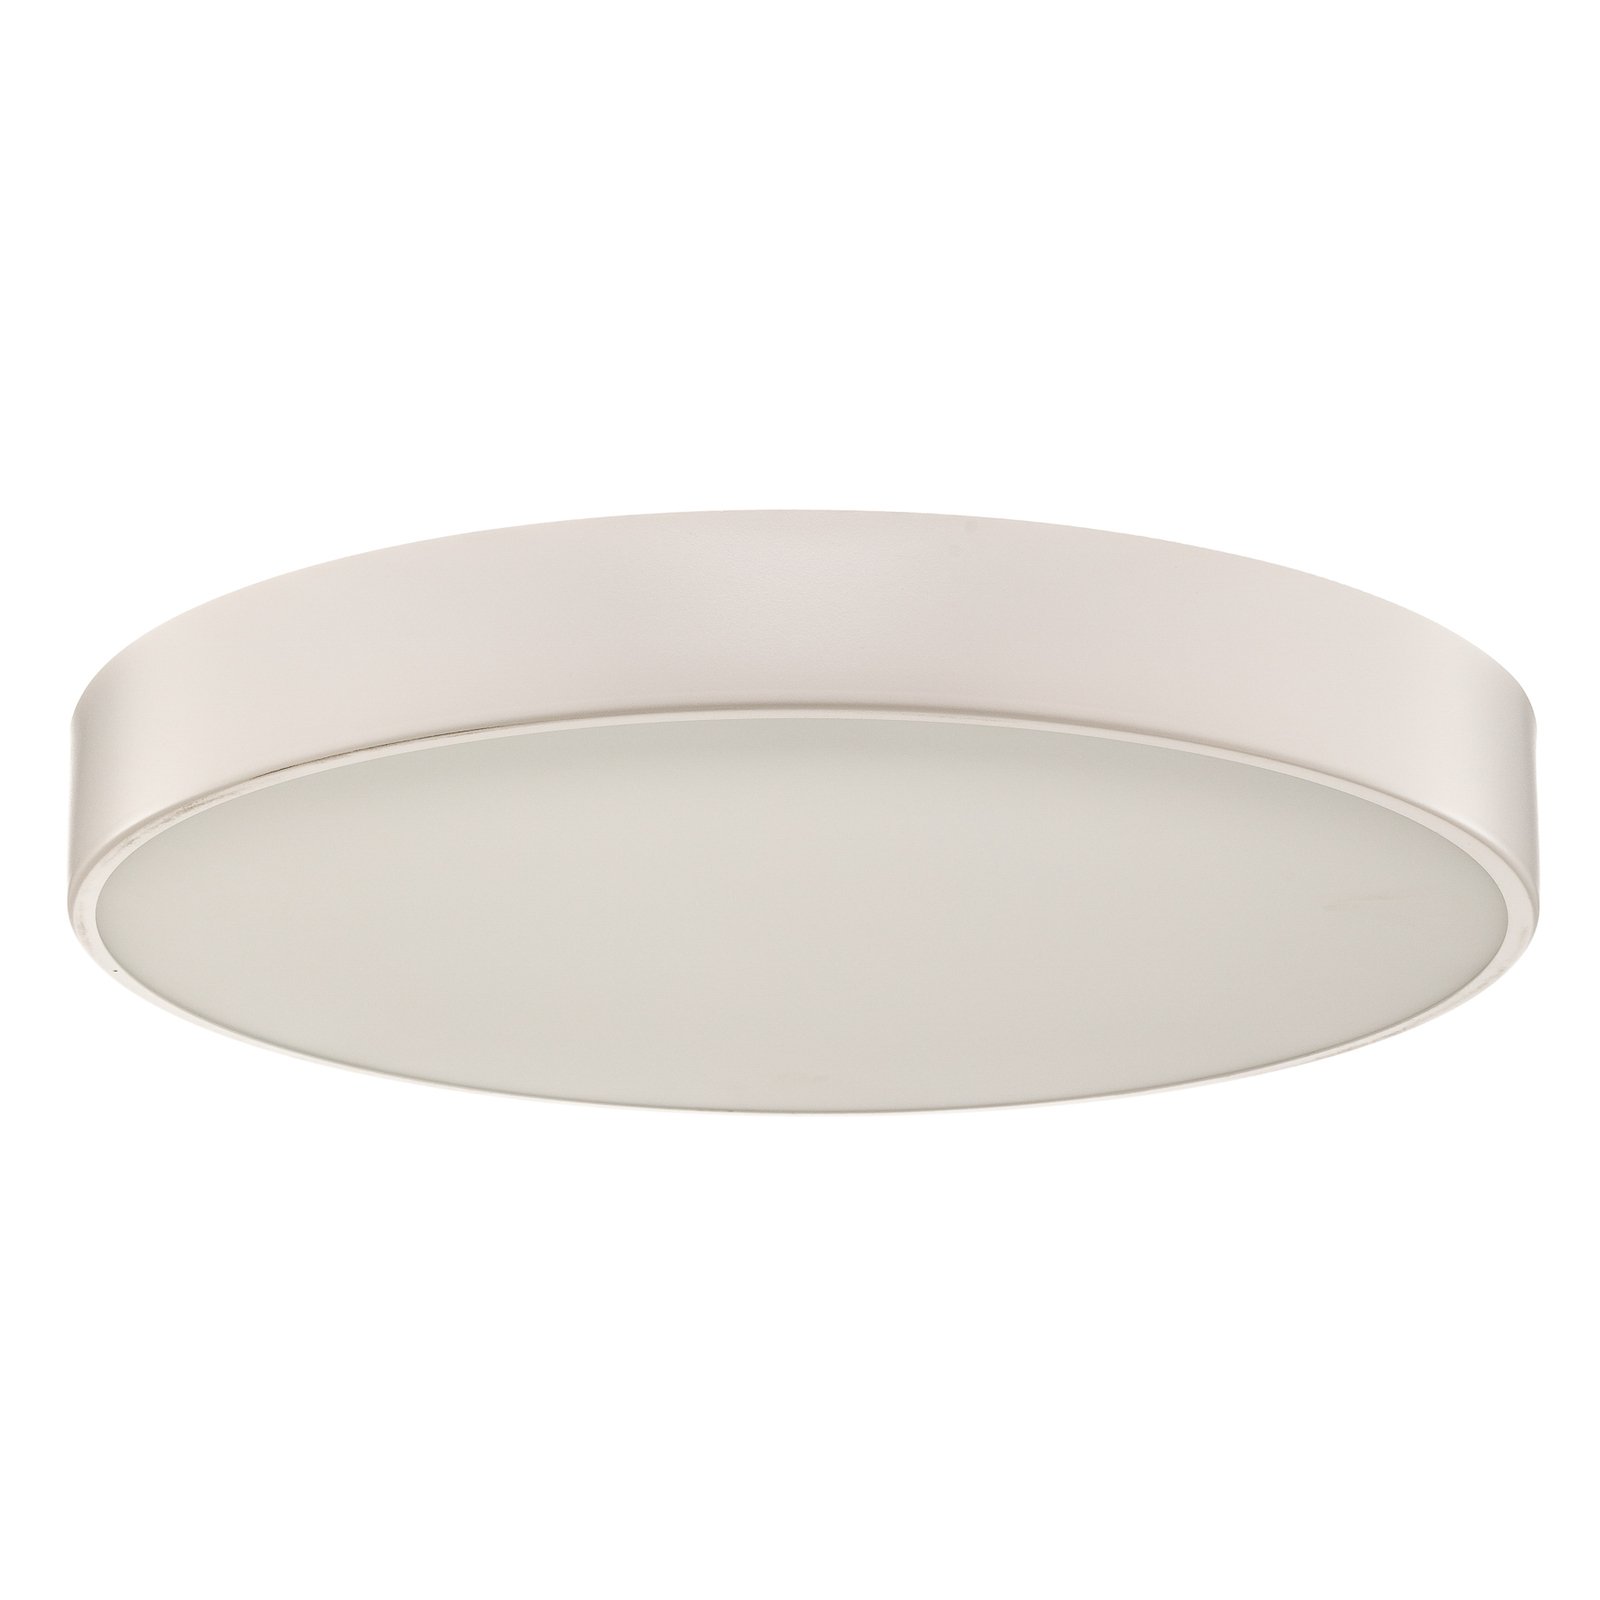 Cleo 600 ceiling light, sensor, Ø 60 cm white